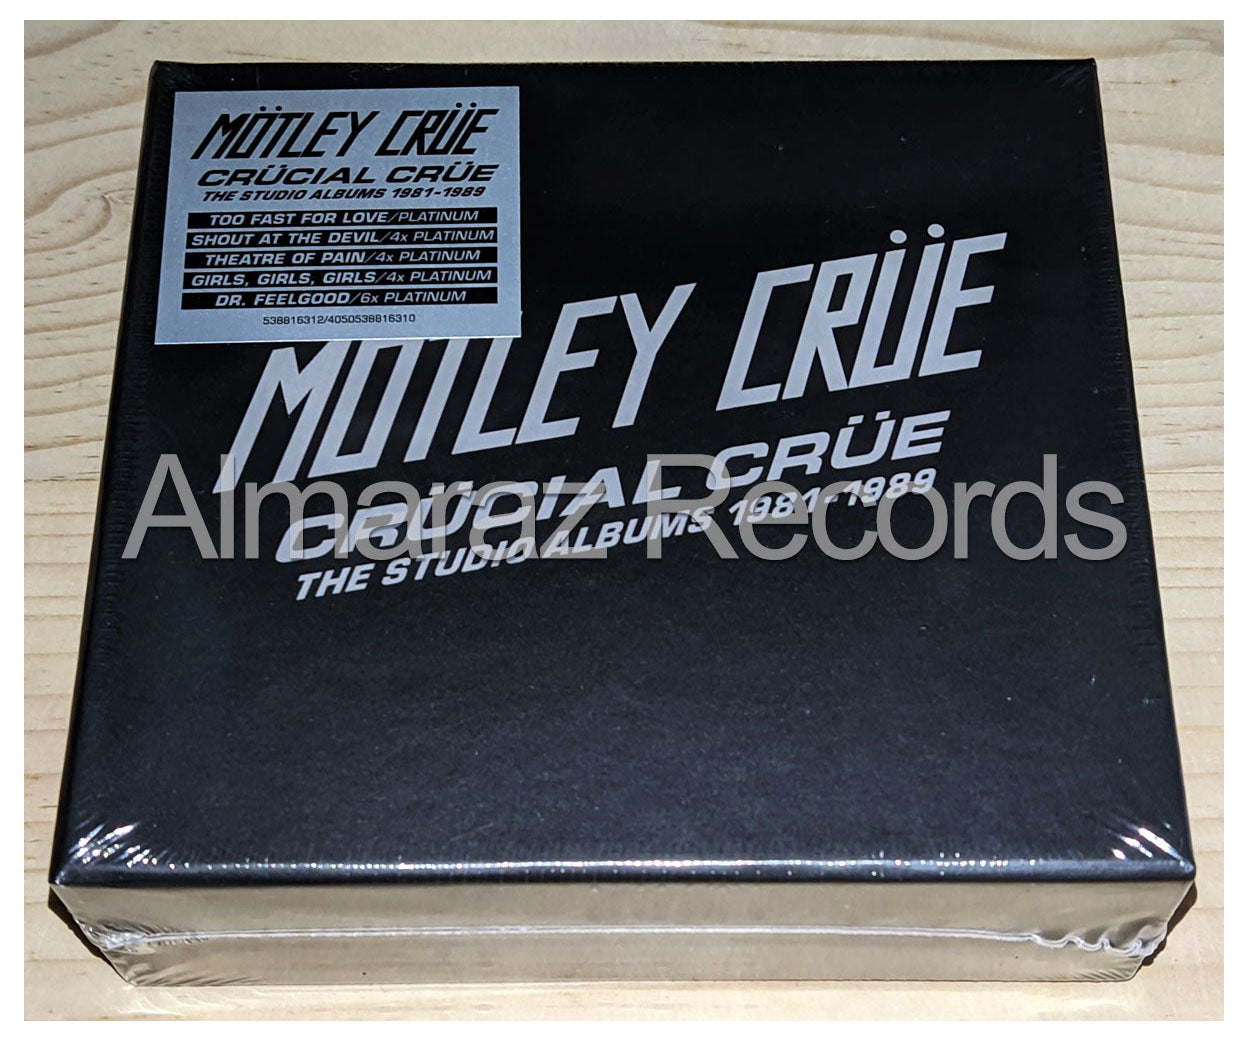 Motley Crue Crucial Crue The Studio Albums 1981-1989 5CD Boxset [Importado]